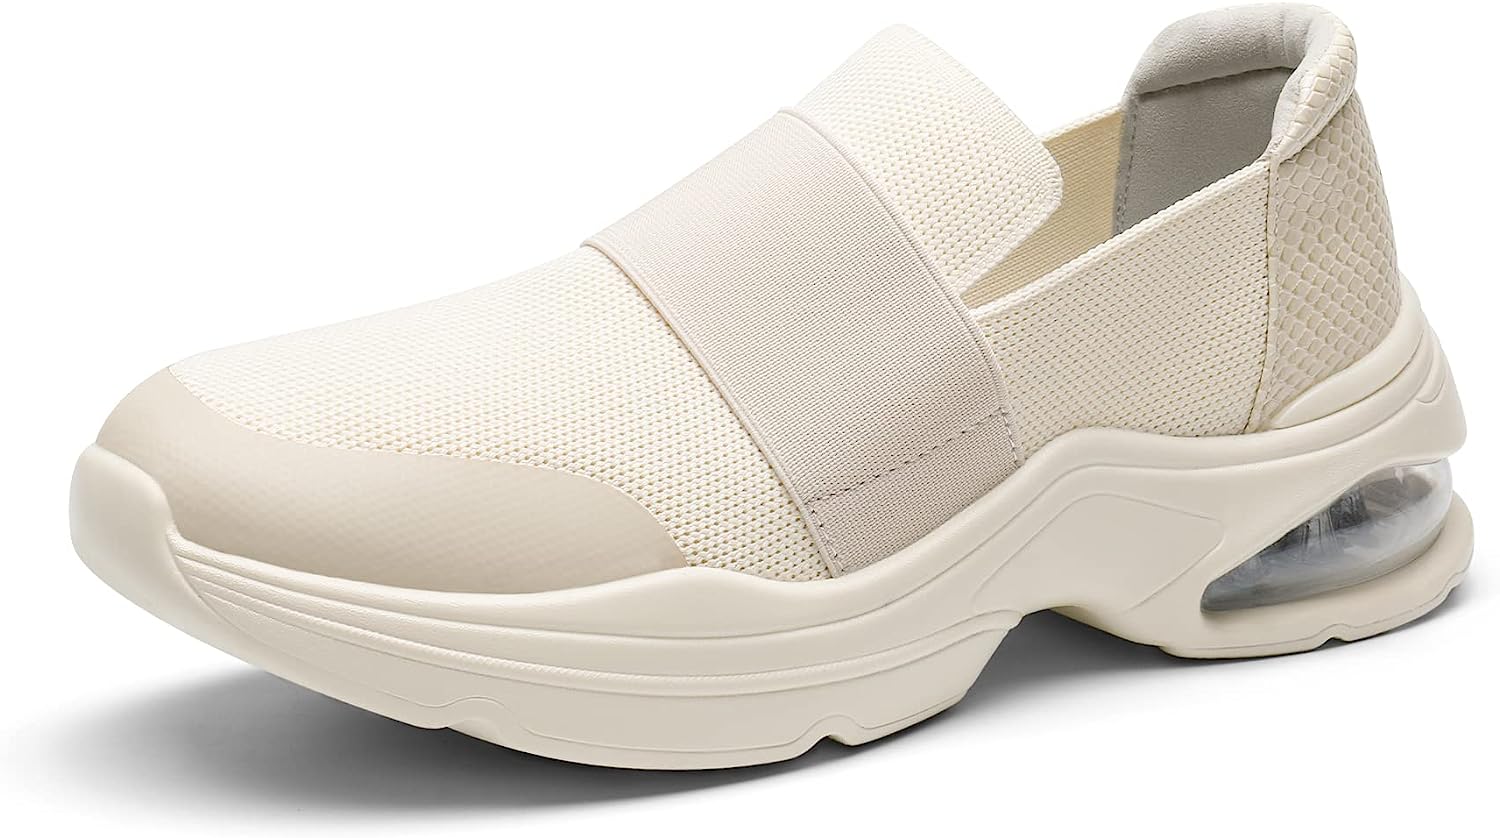 DREAM PAIRS Women's Slip-on Walking Shoes, Air Cushion [...]